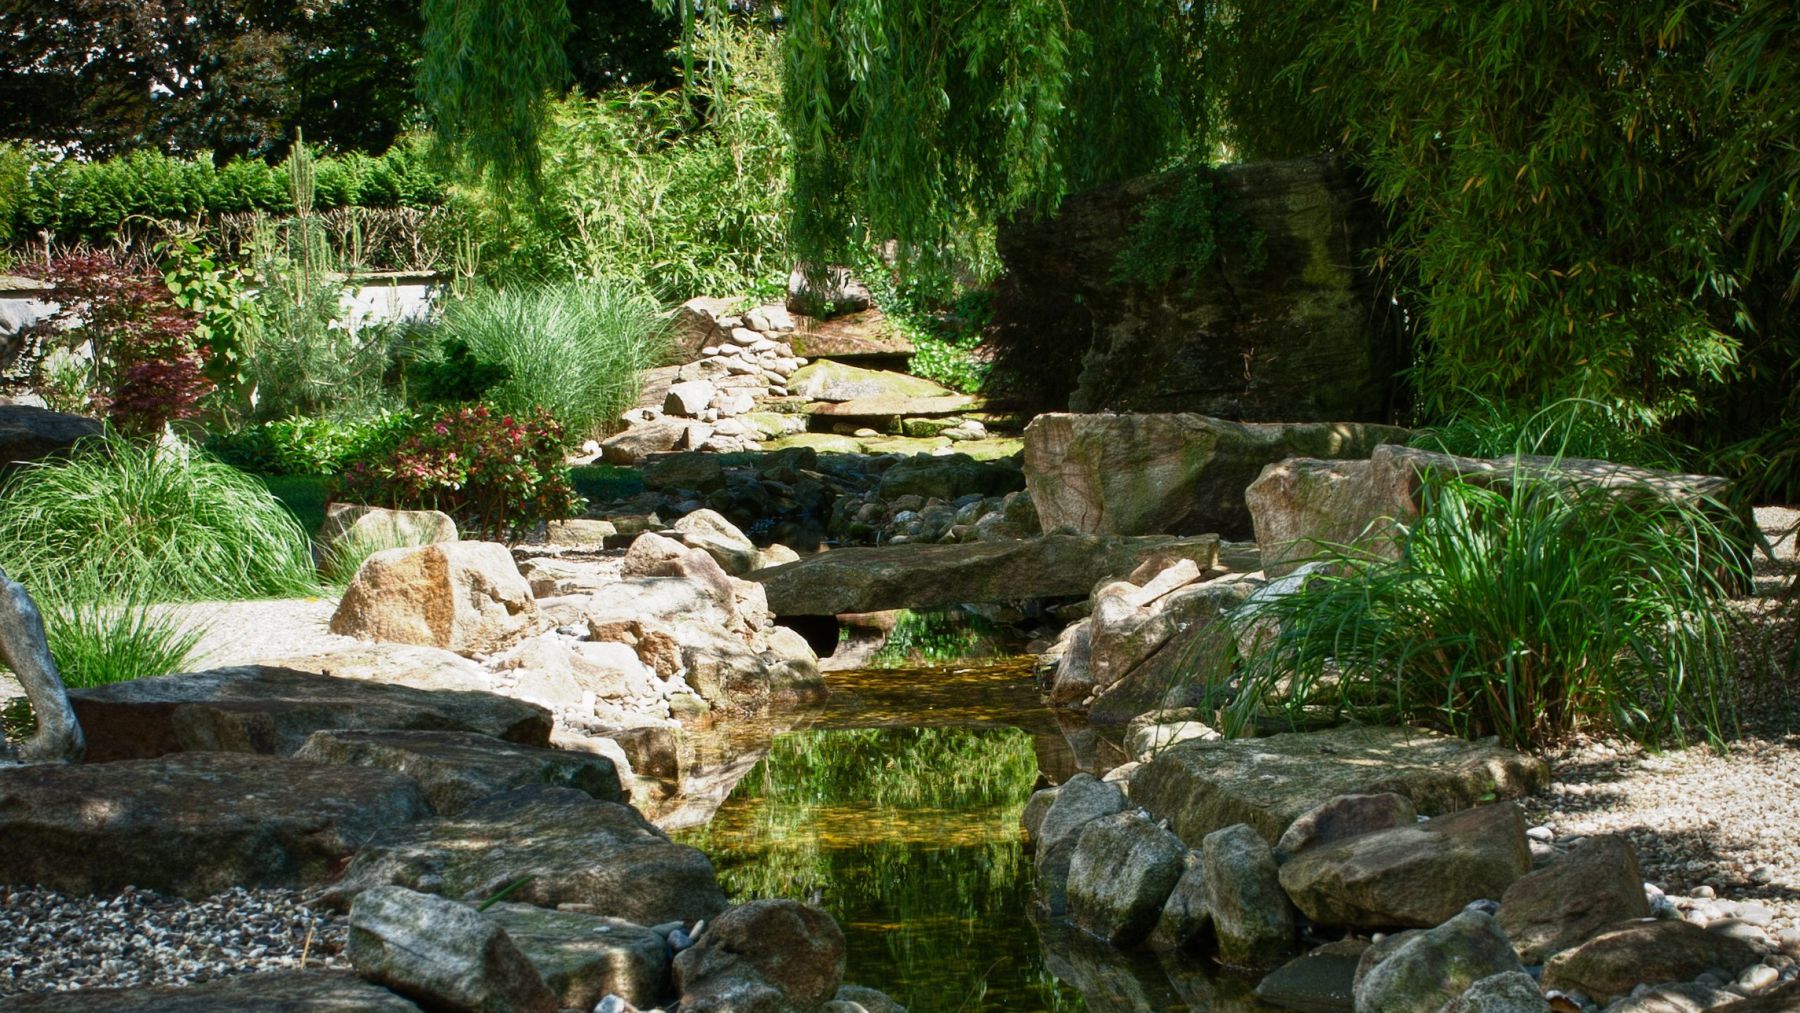 2.9 Ausstrahlung der Elemente - Naturgarten mit Glanzrolle für Stein und Wasser